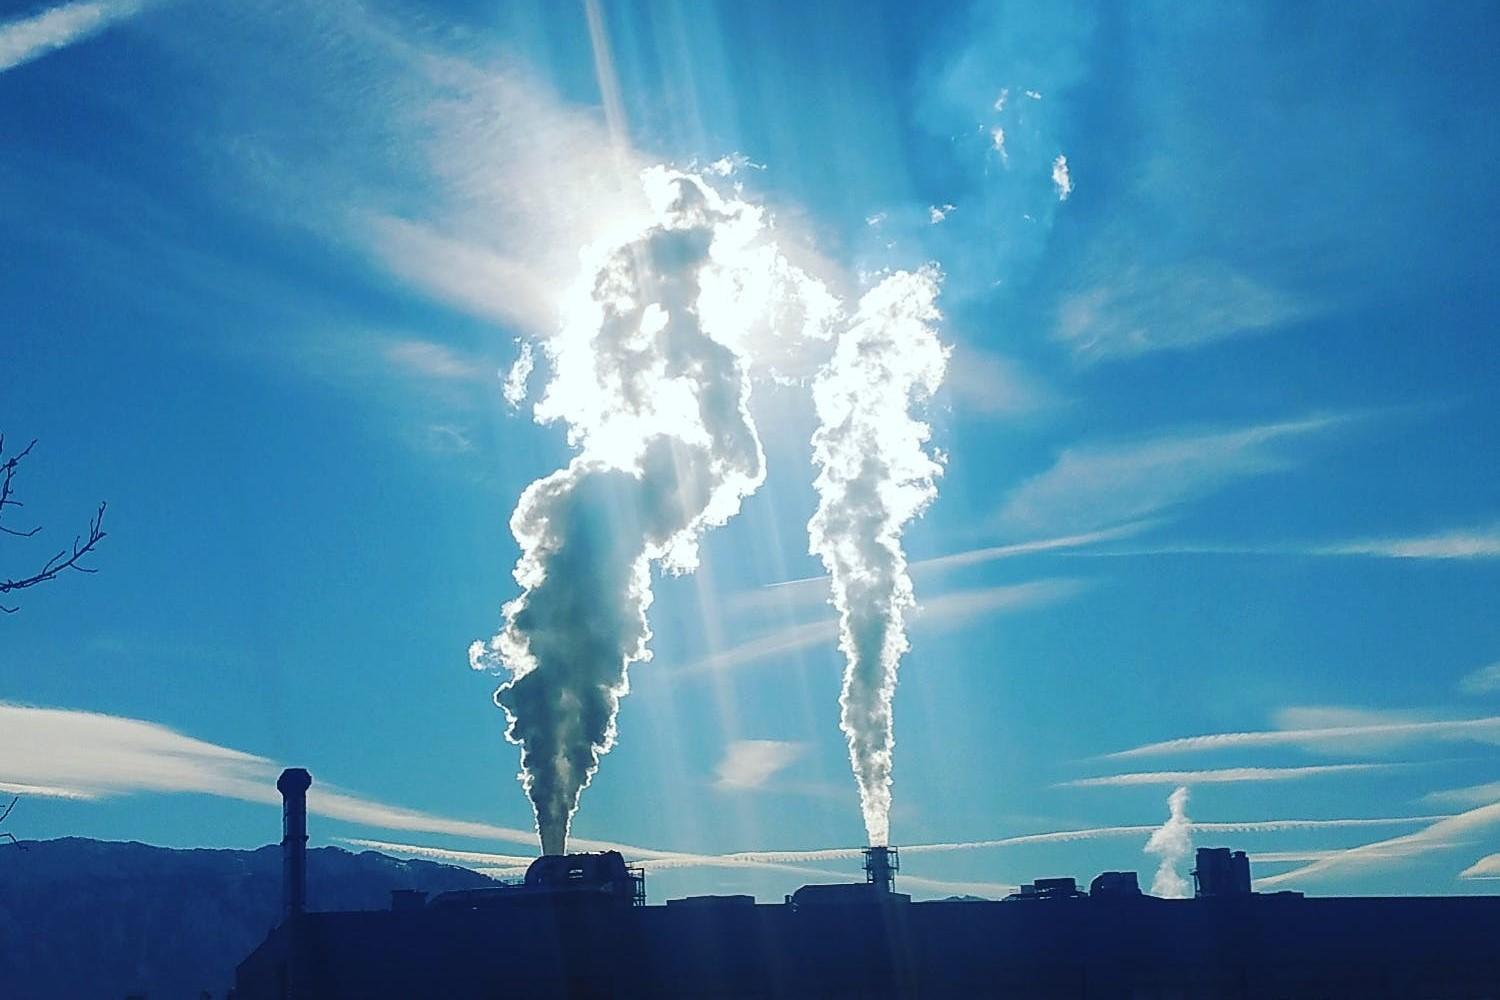 LE EMISSIONI DI CO2 AI MINIMI DA 60 ANNI NELL'UE